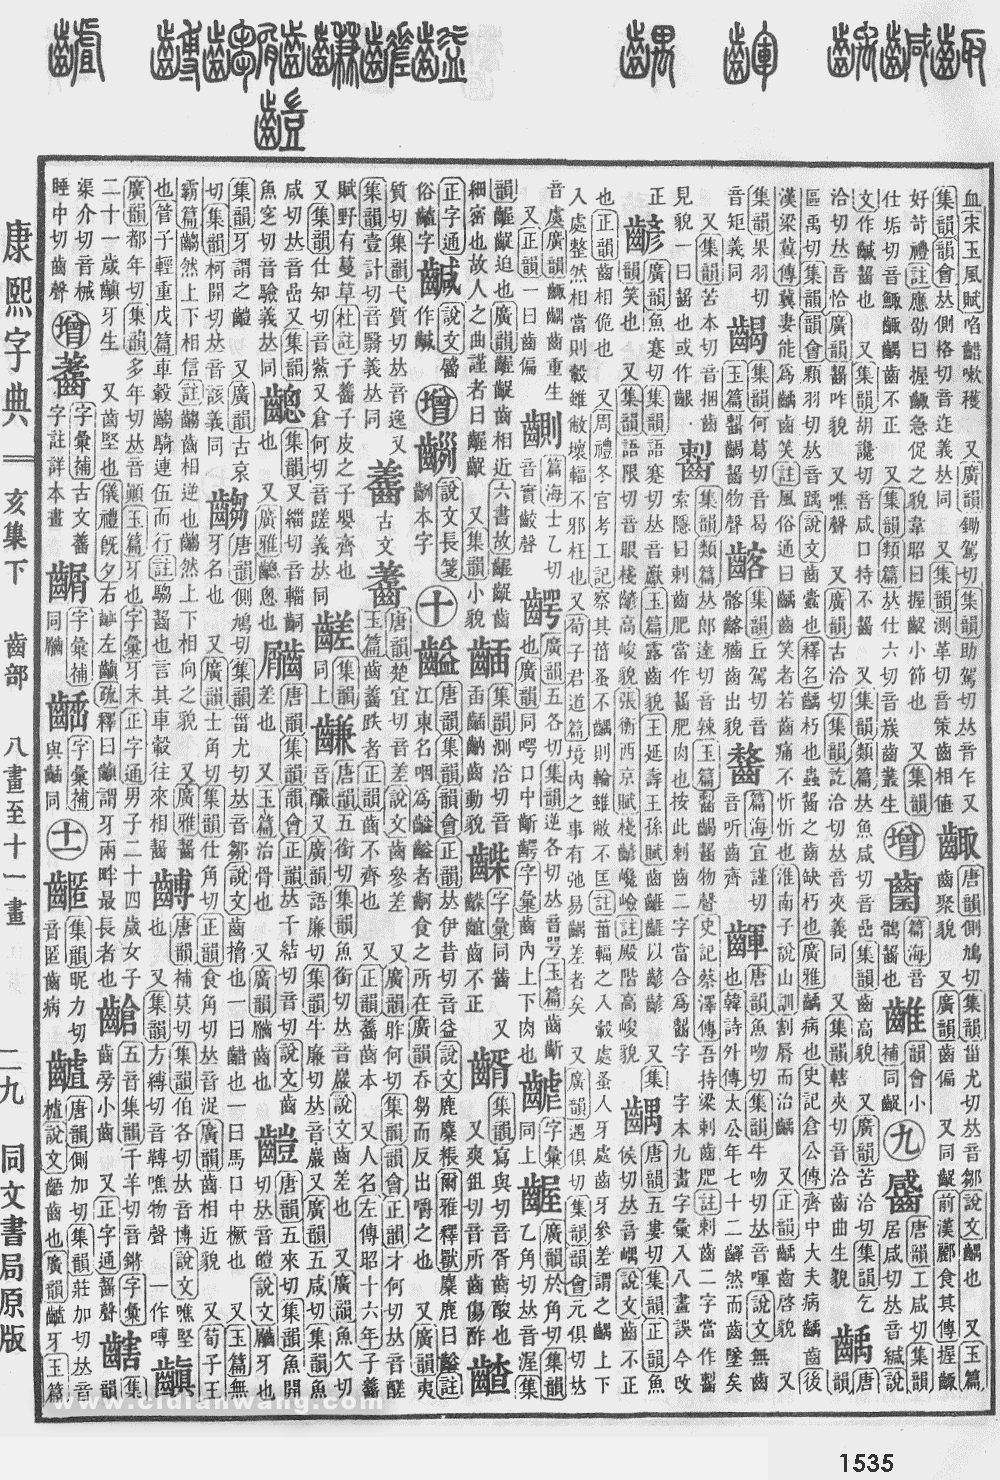 康熙字典掃描版第1535頁